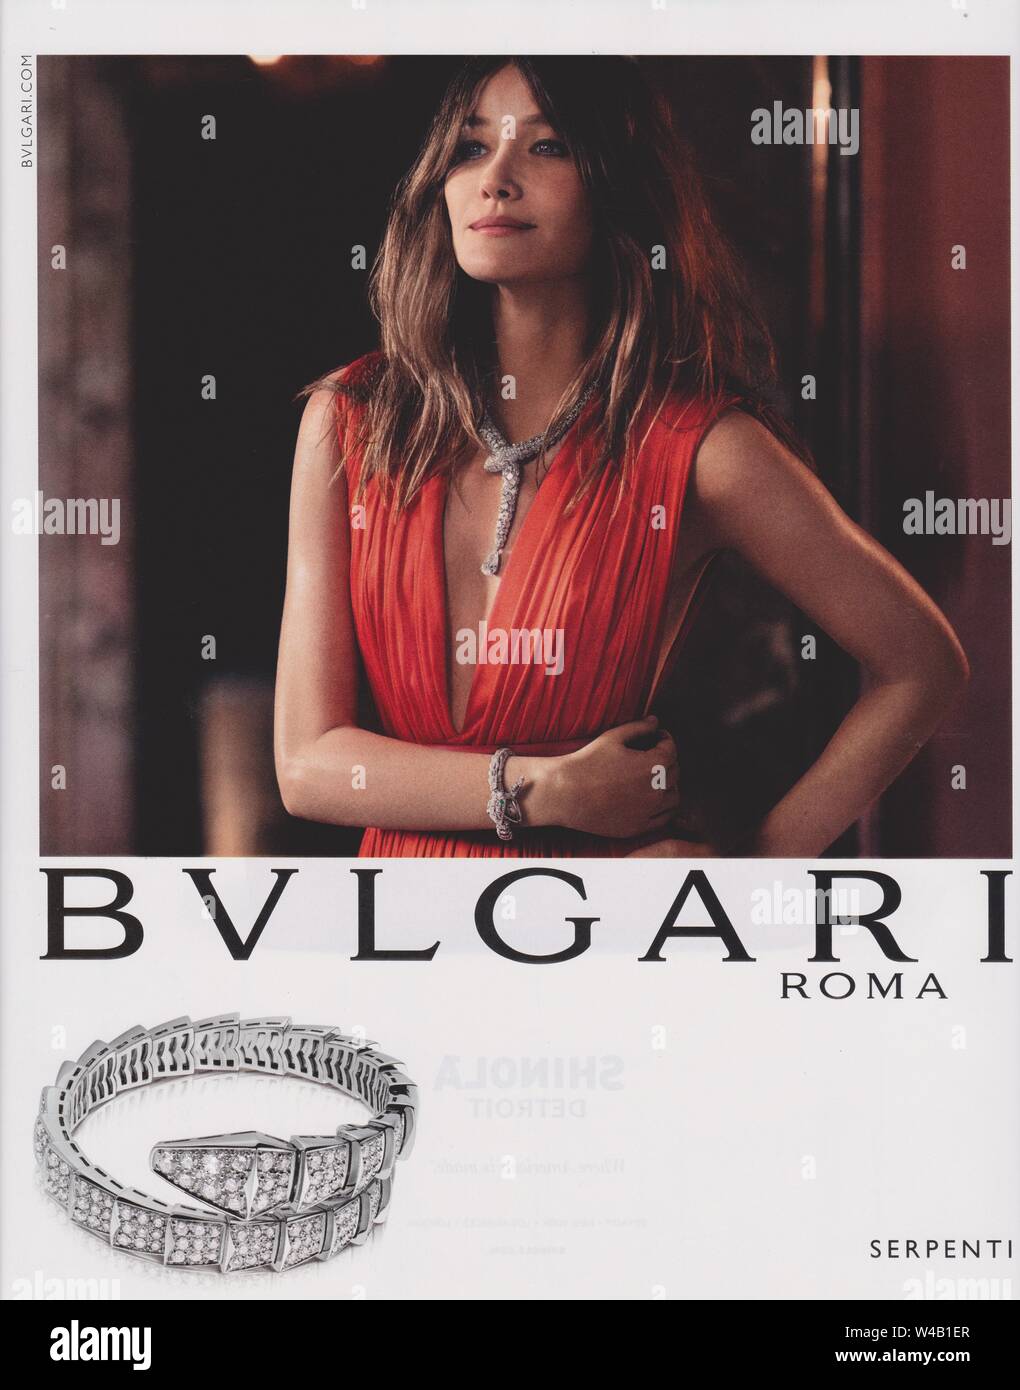 bulgari roma fashion